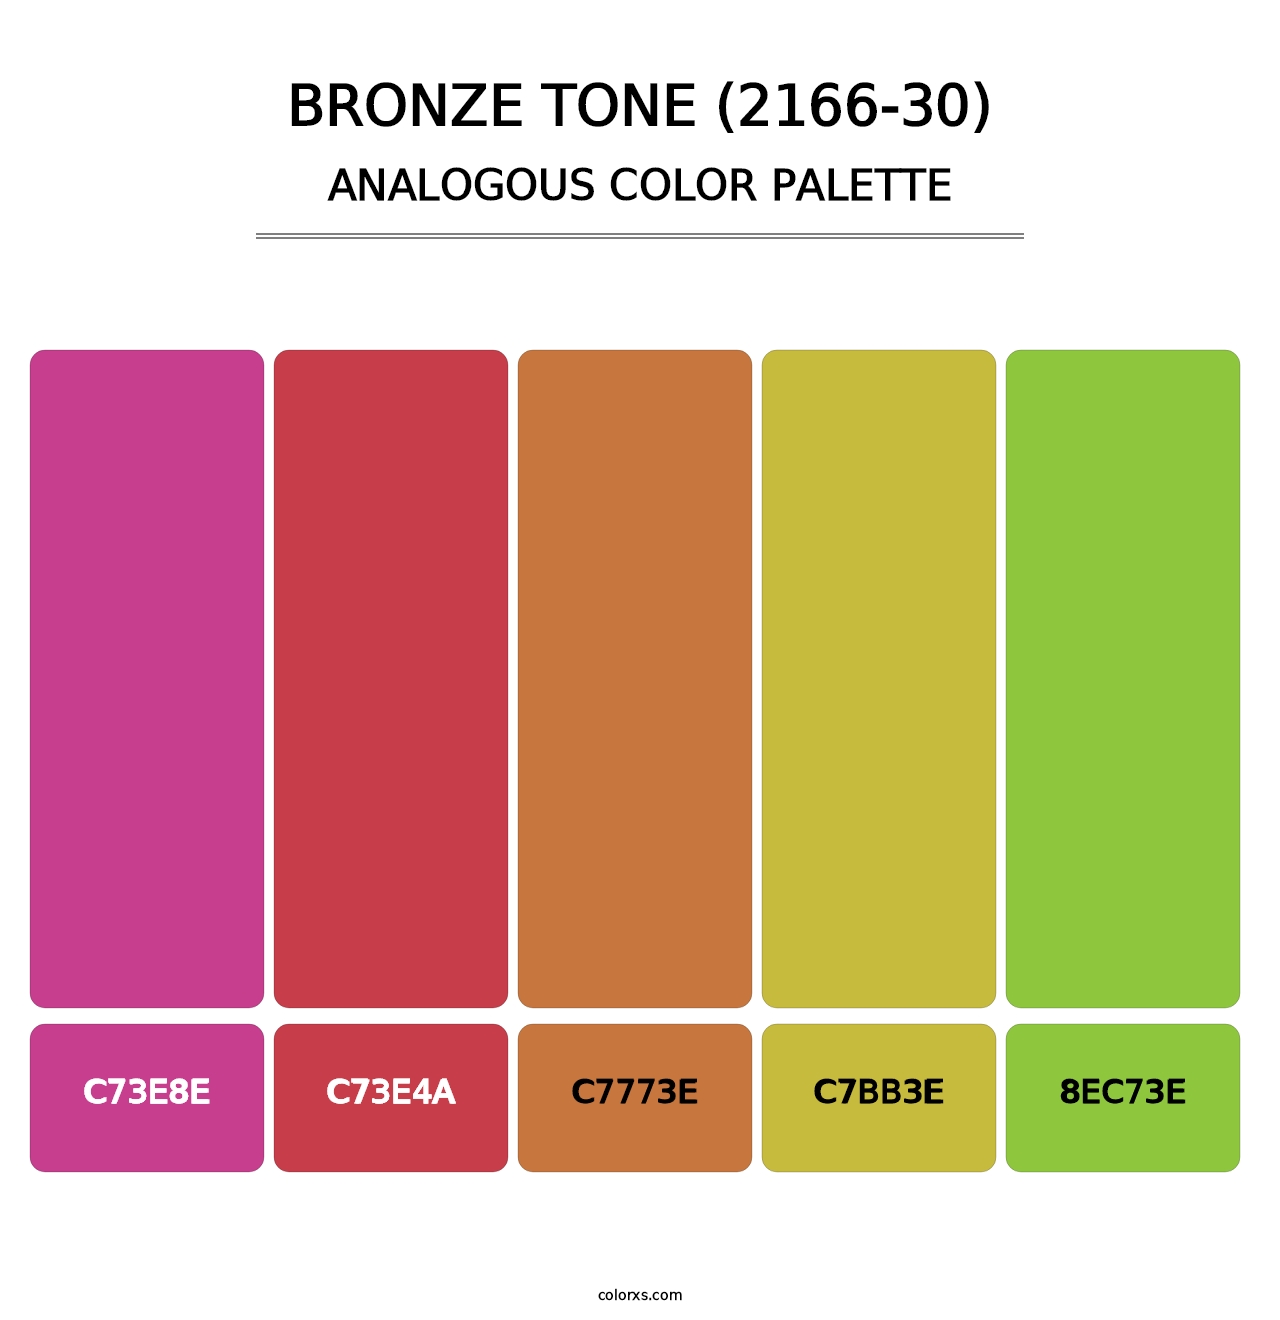 Bronze Tone (2166-30) - Analogous Color Palette